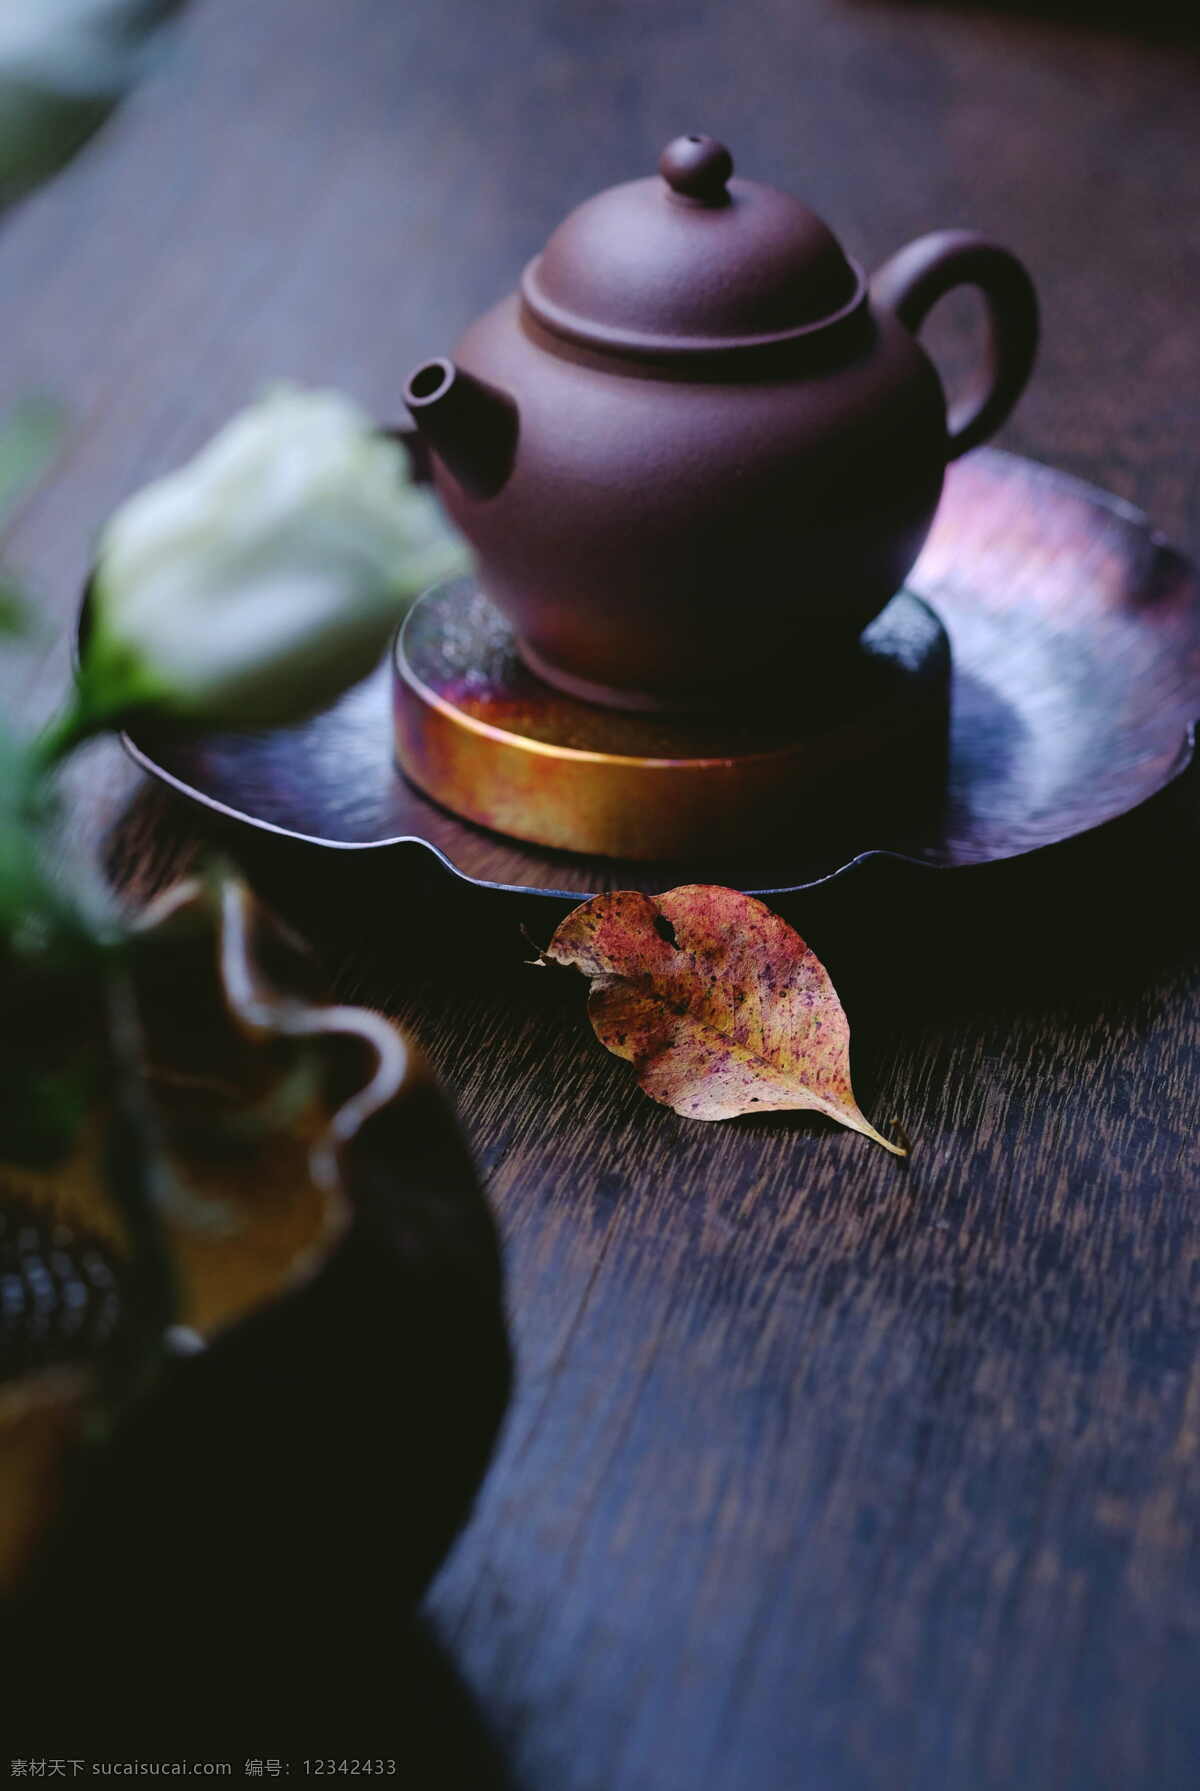 古朴茶壶图片 茶托 茶图片 铜盘 艺术 茶壶 杯子 茶文化 cc0 公共领域 大图 餐饮美食 传统美食